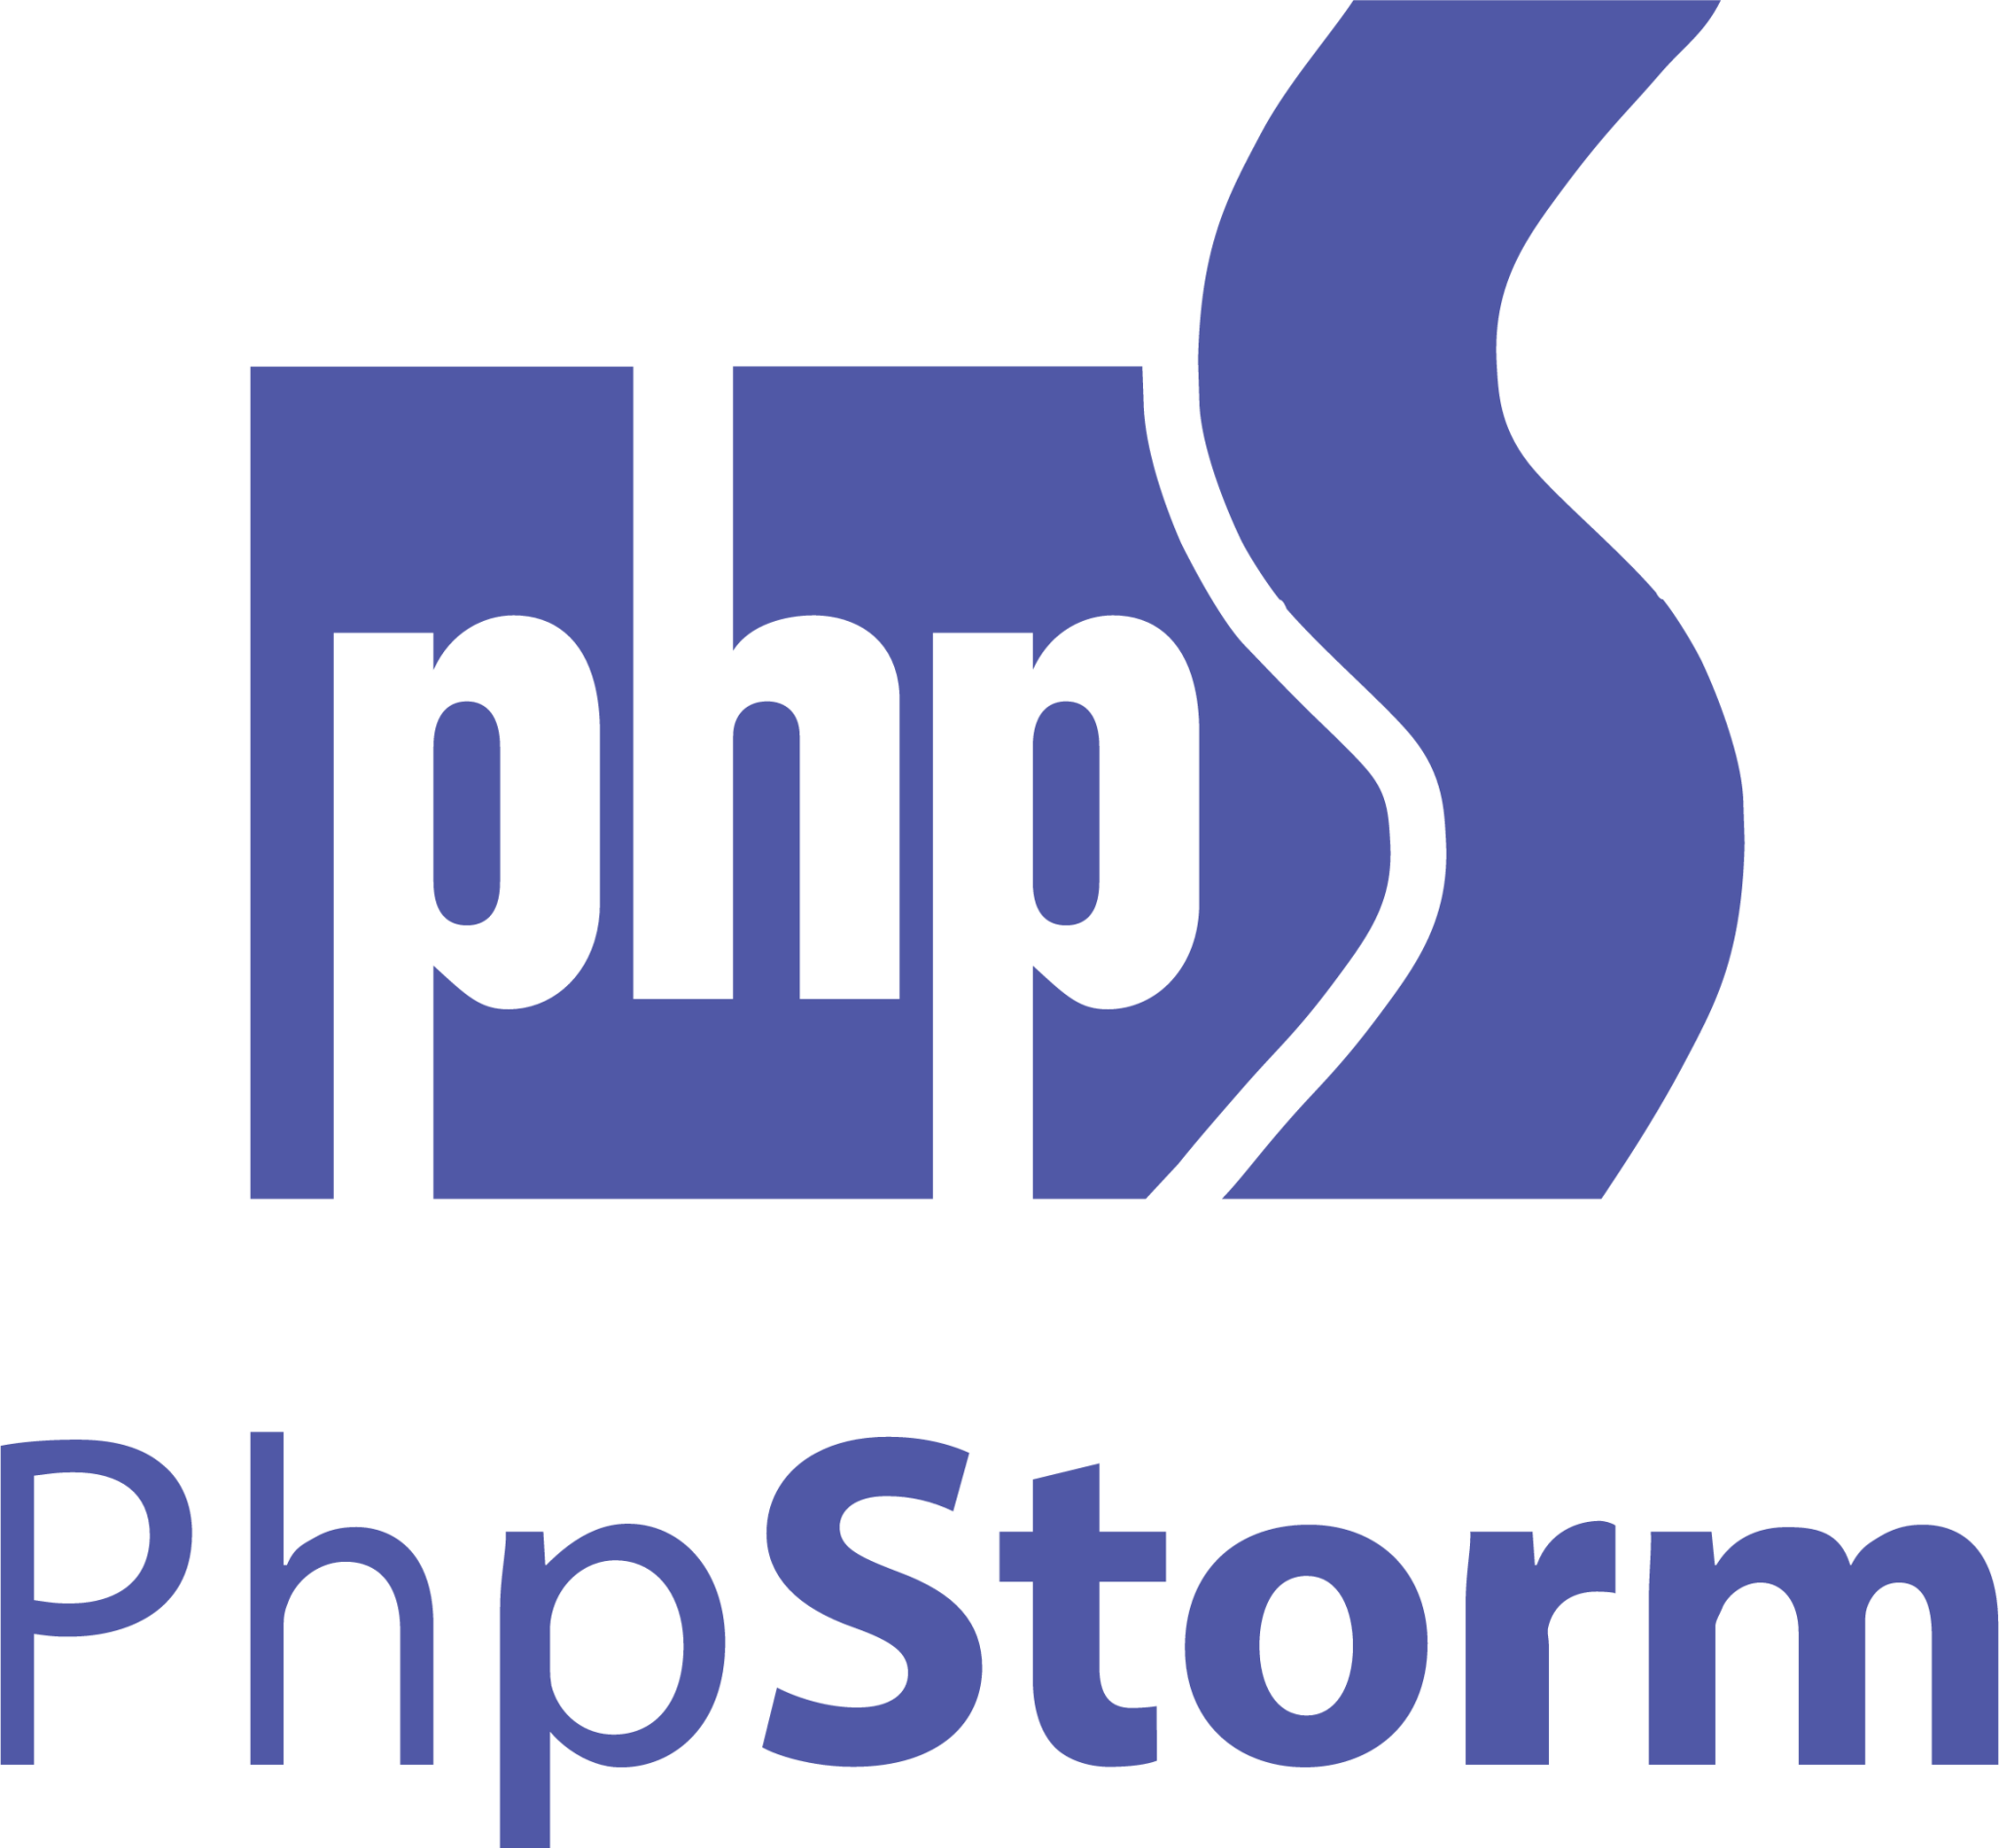 phpstorm plain wordmark icon